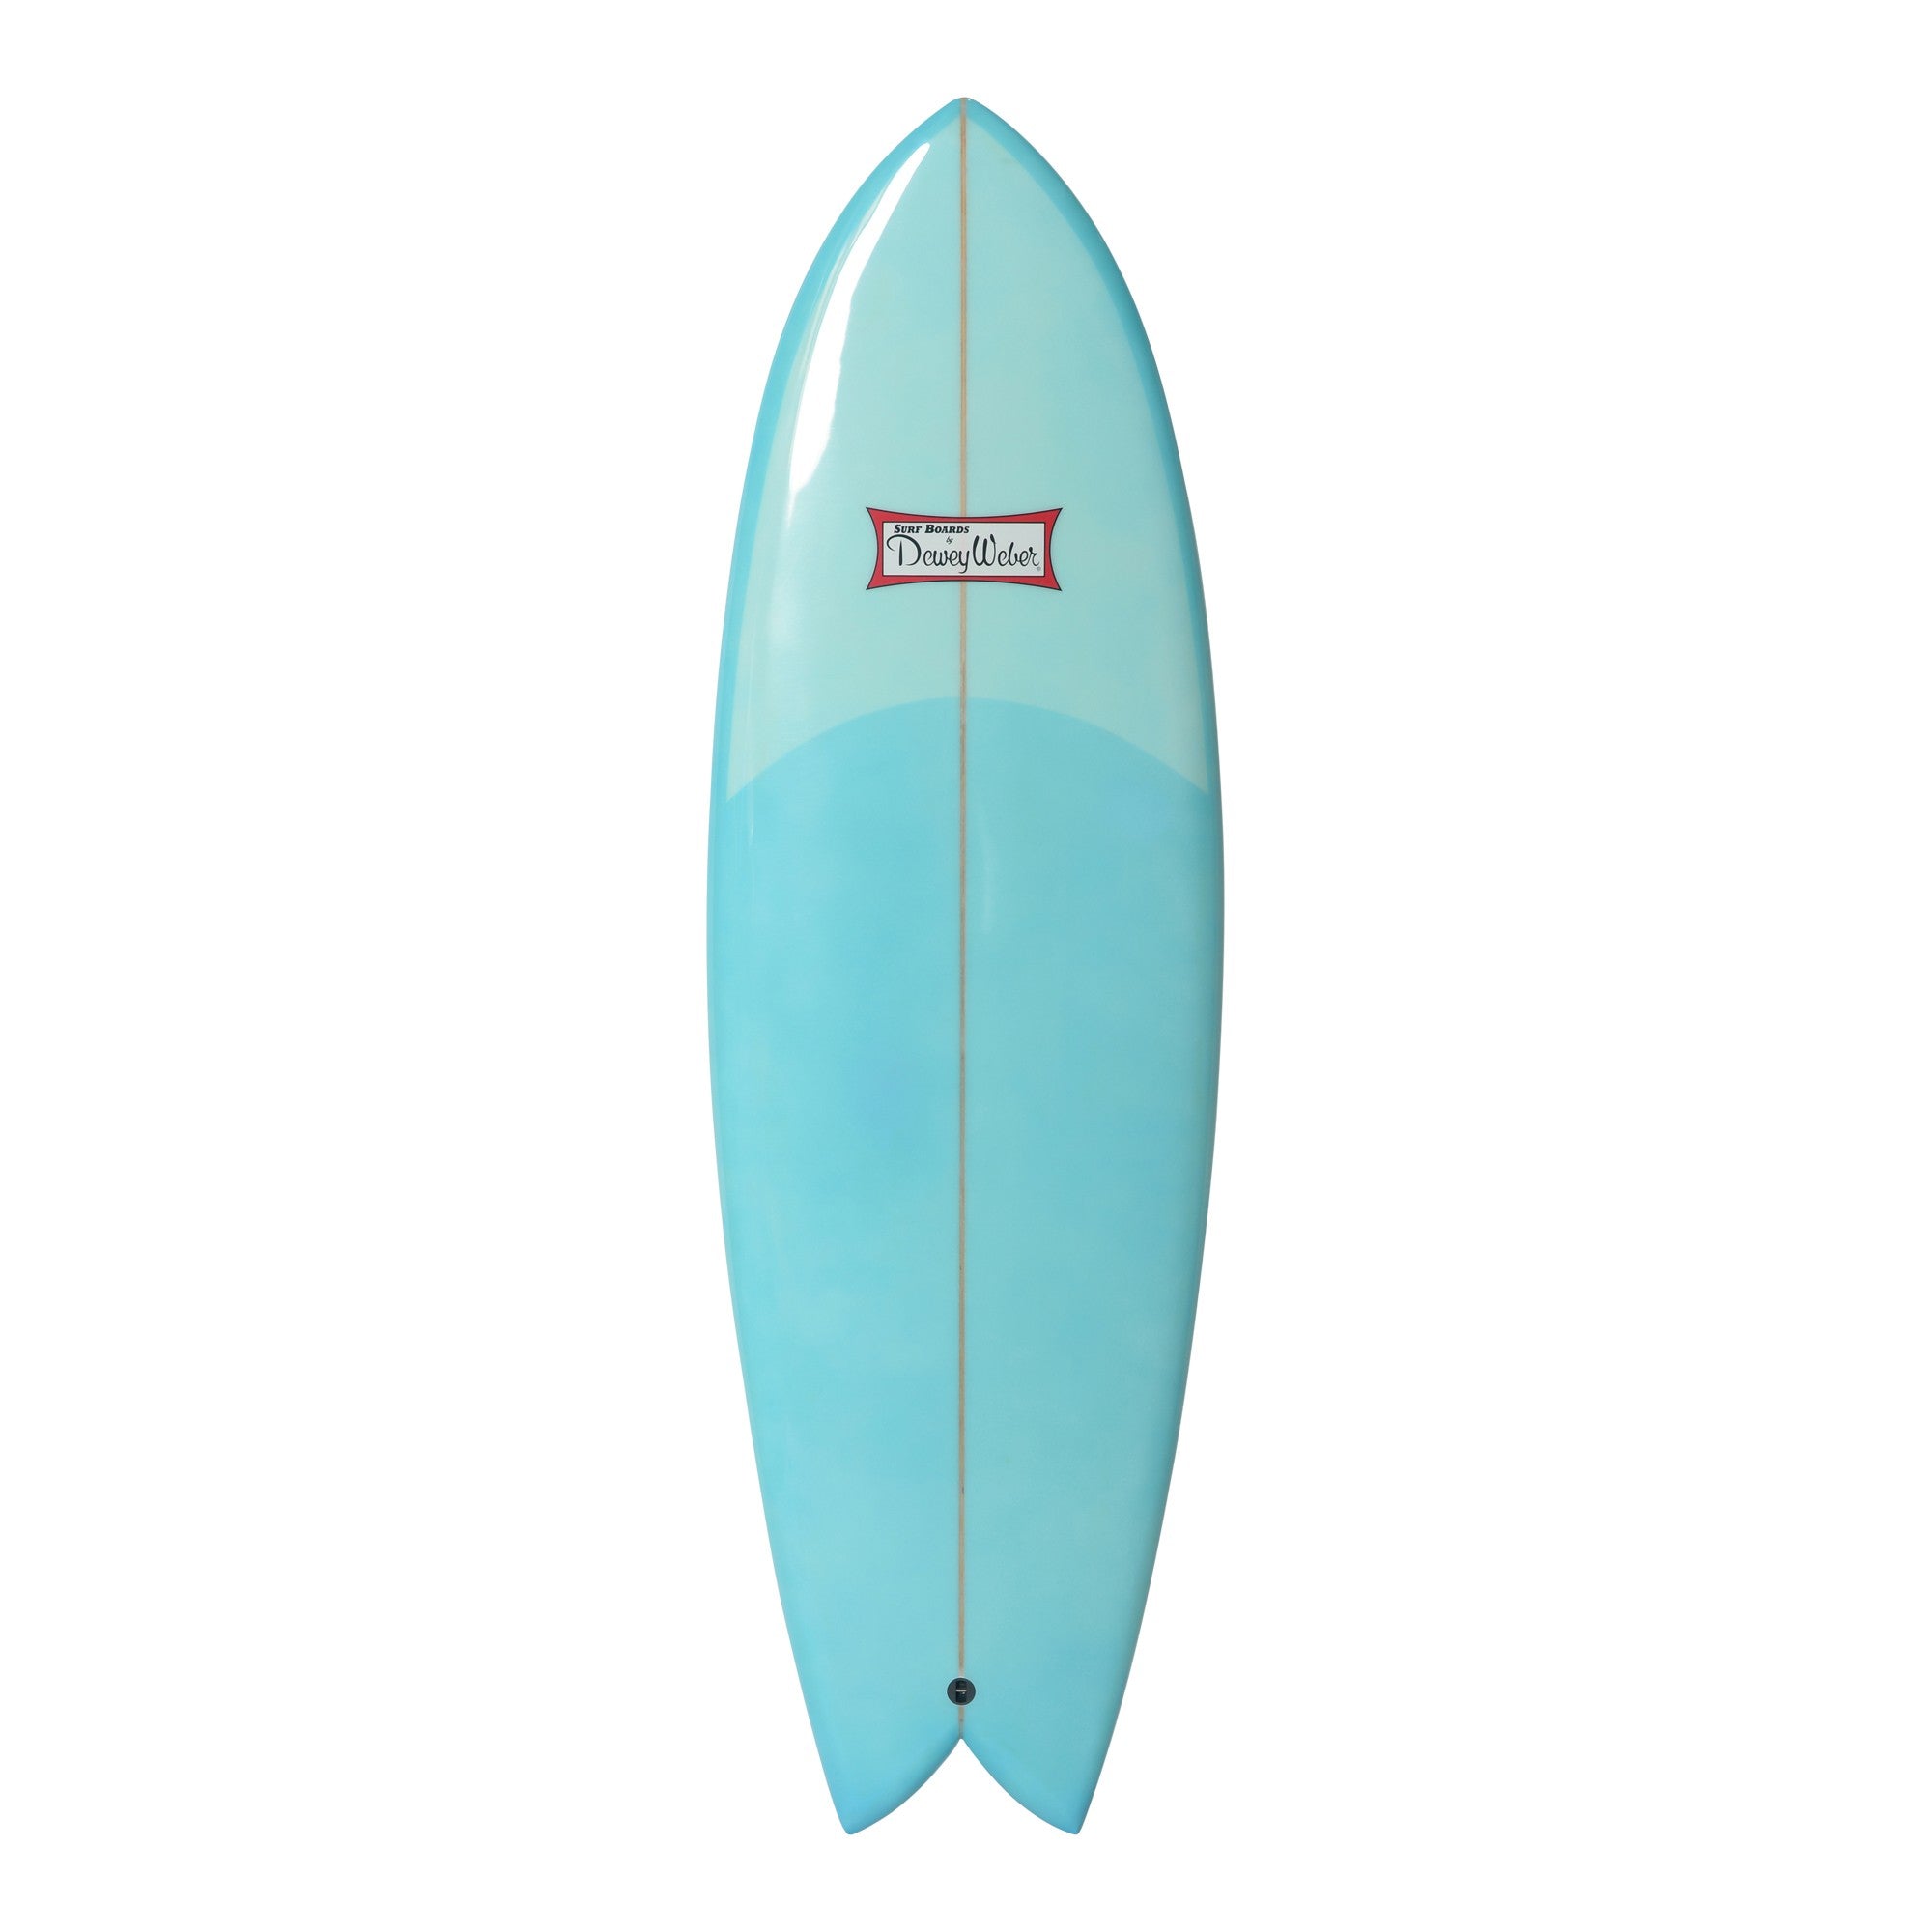 WEBER SURFBOARDS - Swish 5'9 - Blue